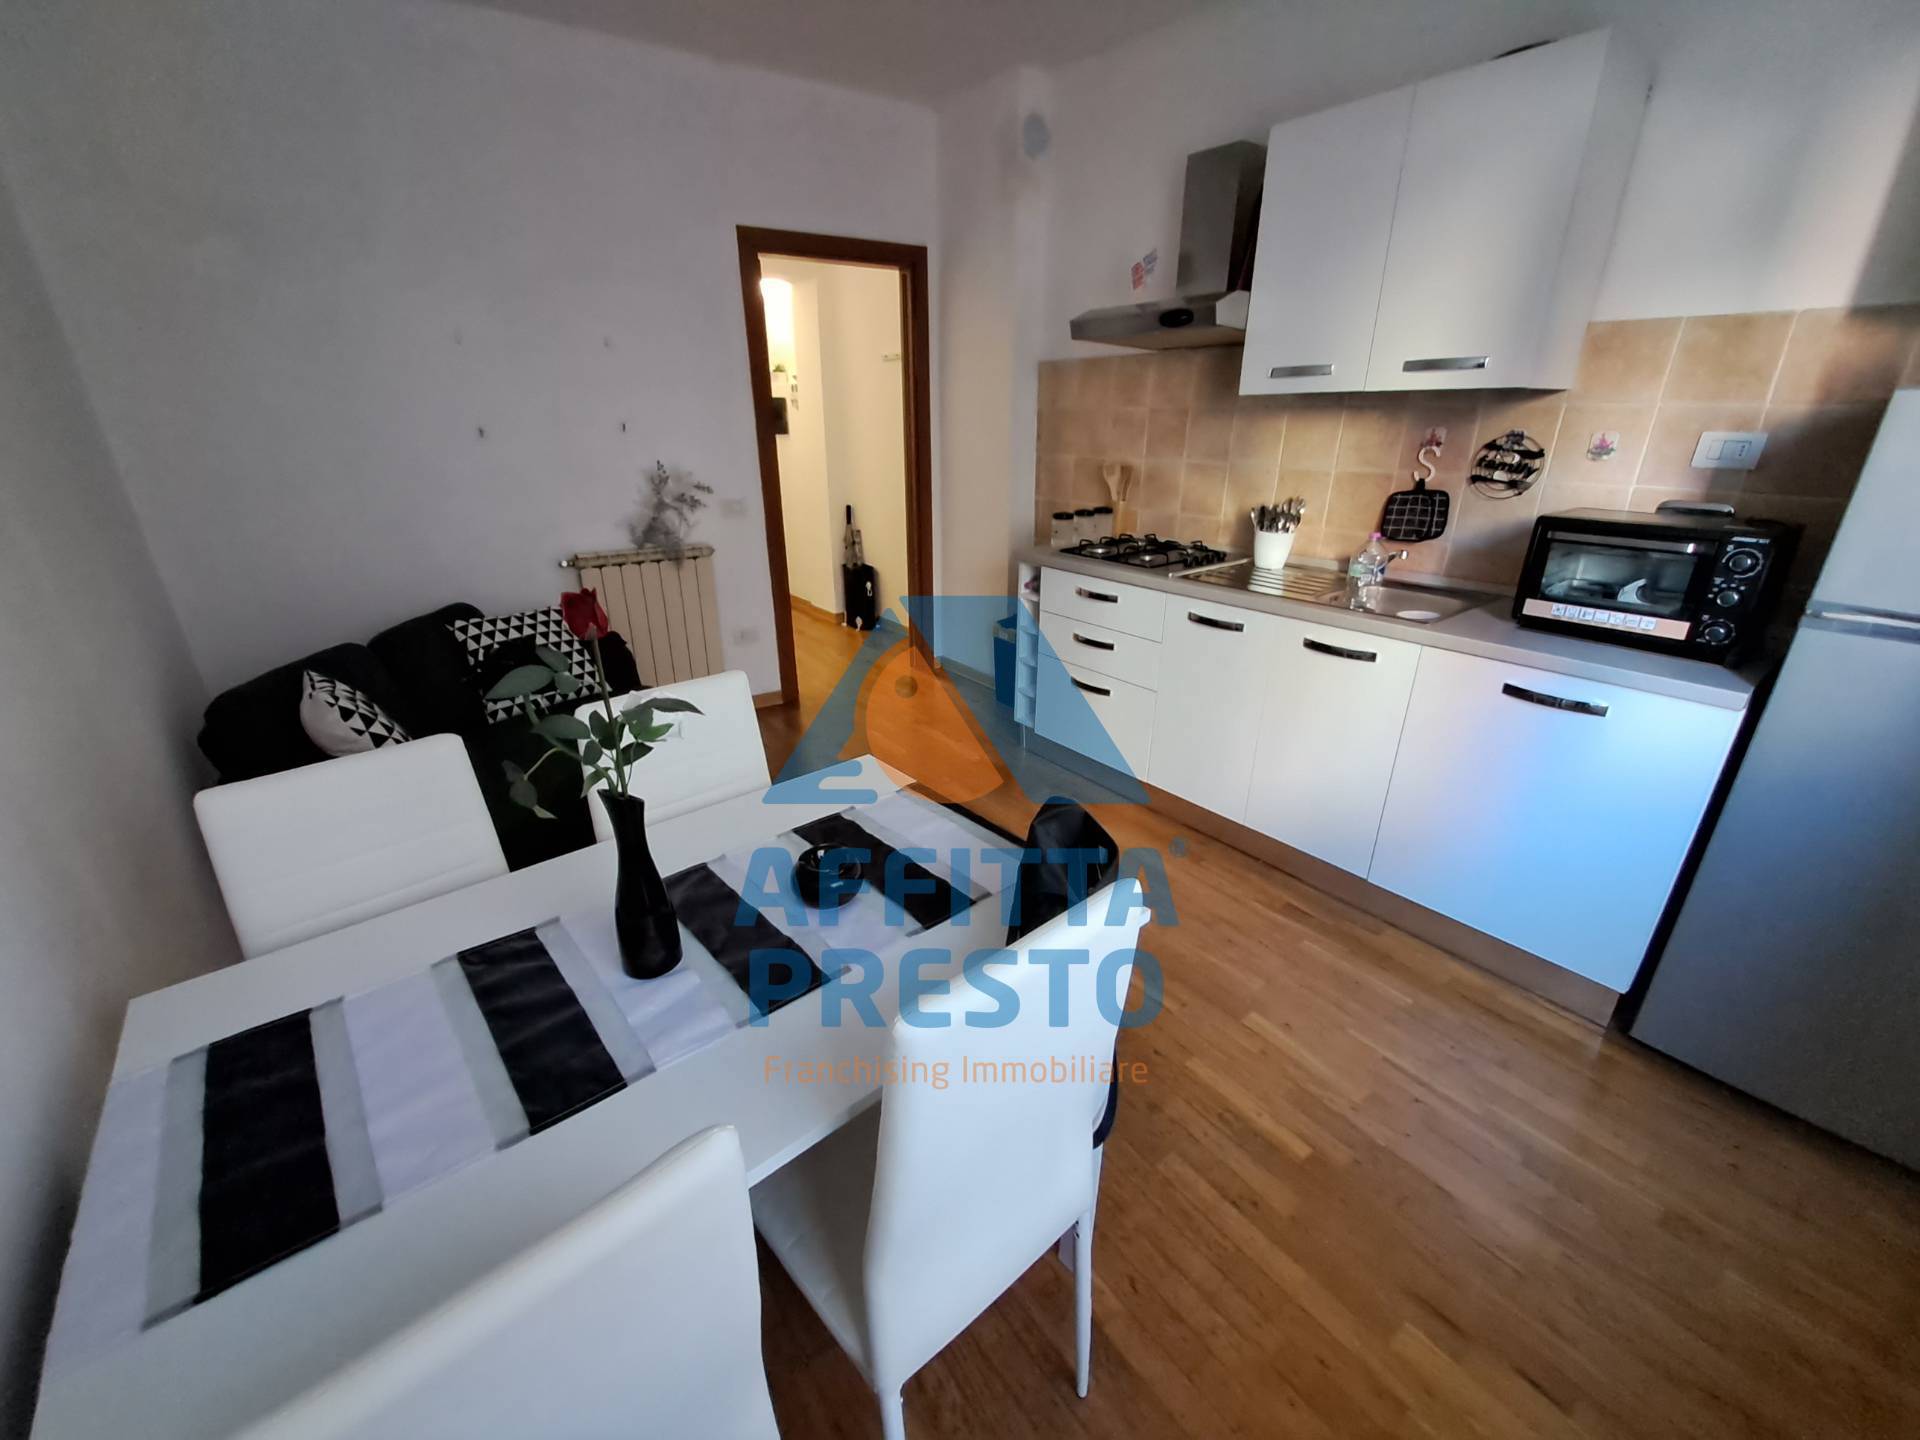 Appartamento in affitto a Fucecchio, 3 locali, prezzo € 600 | PortaleAgenzieImmobiliari.it